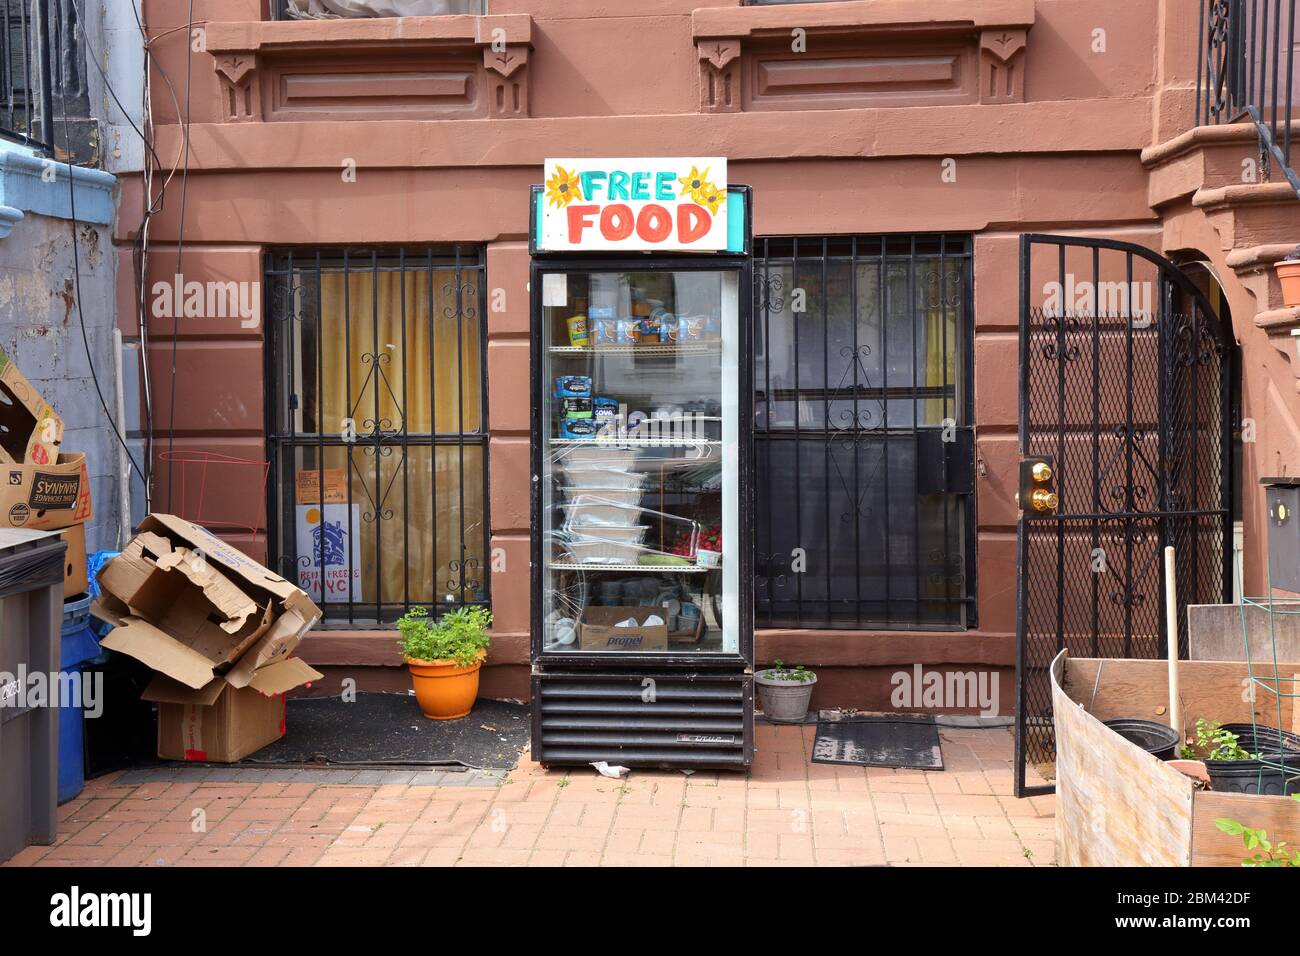 Ein Free Food Gemeinschaftskühlschrank vor einem Gebäude in Brooklyn, um den weniger glücklichen zu helfen. Stockfoto